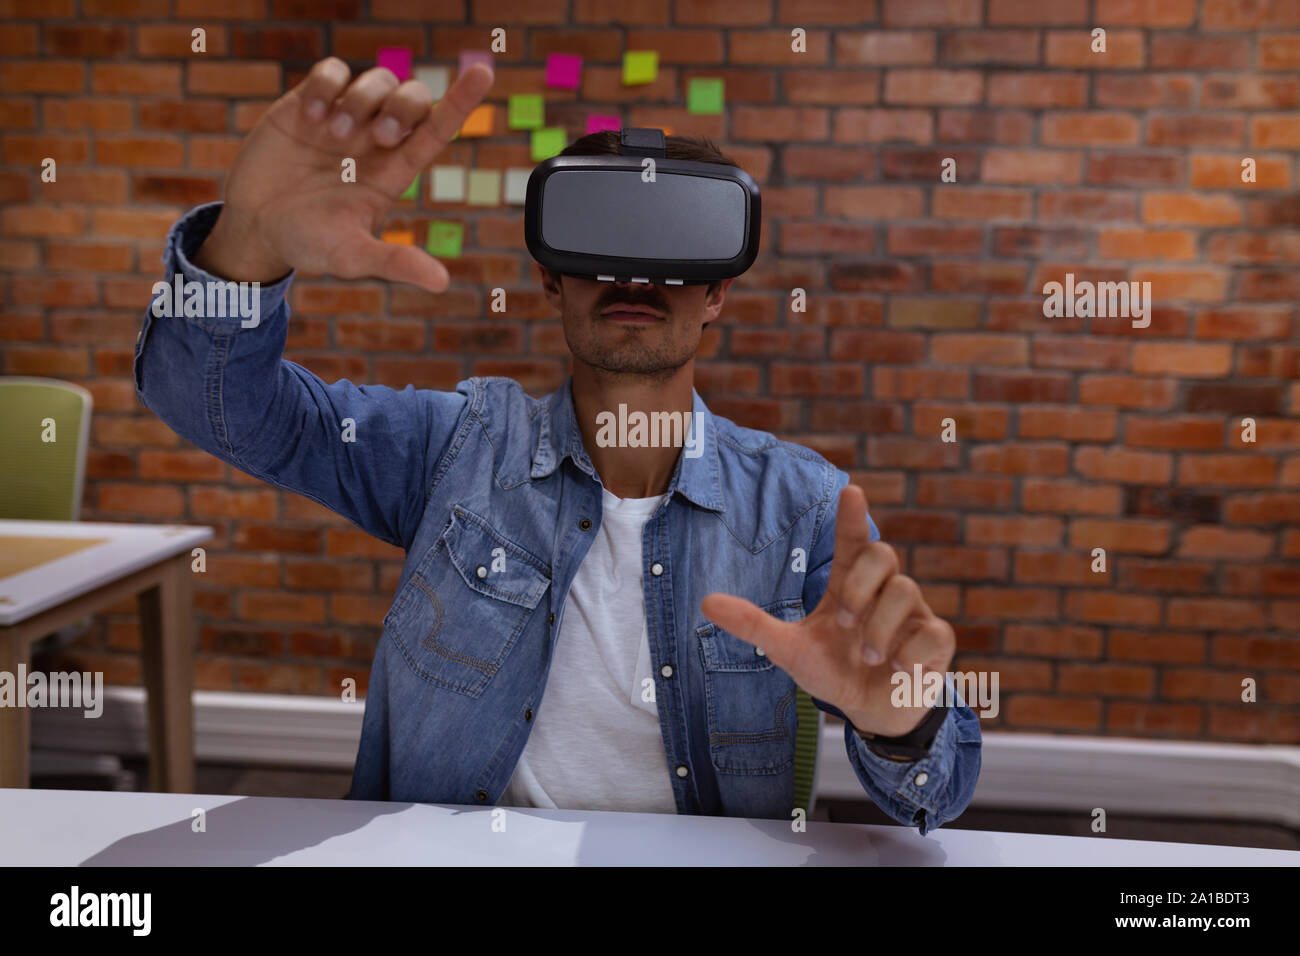 Junge männliche Business kreativ mit VR-Headset in einem Büro Stockfoto